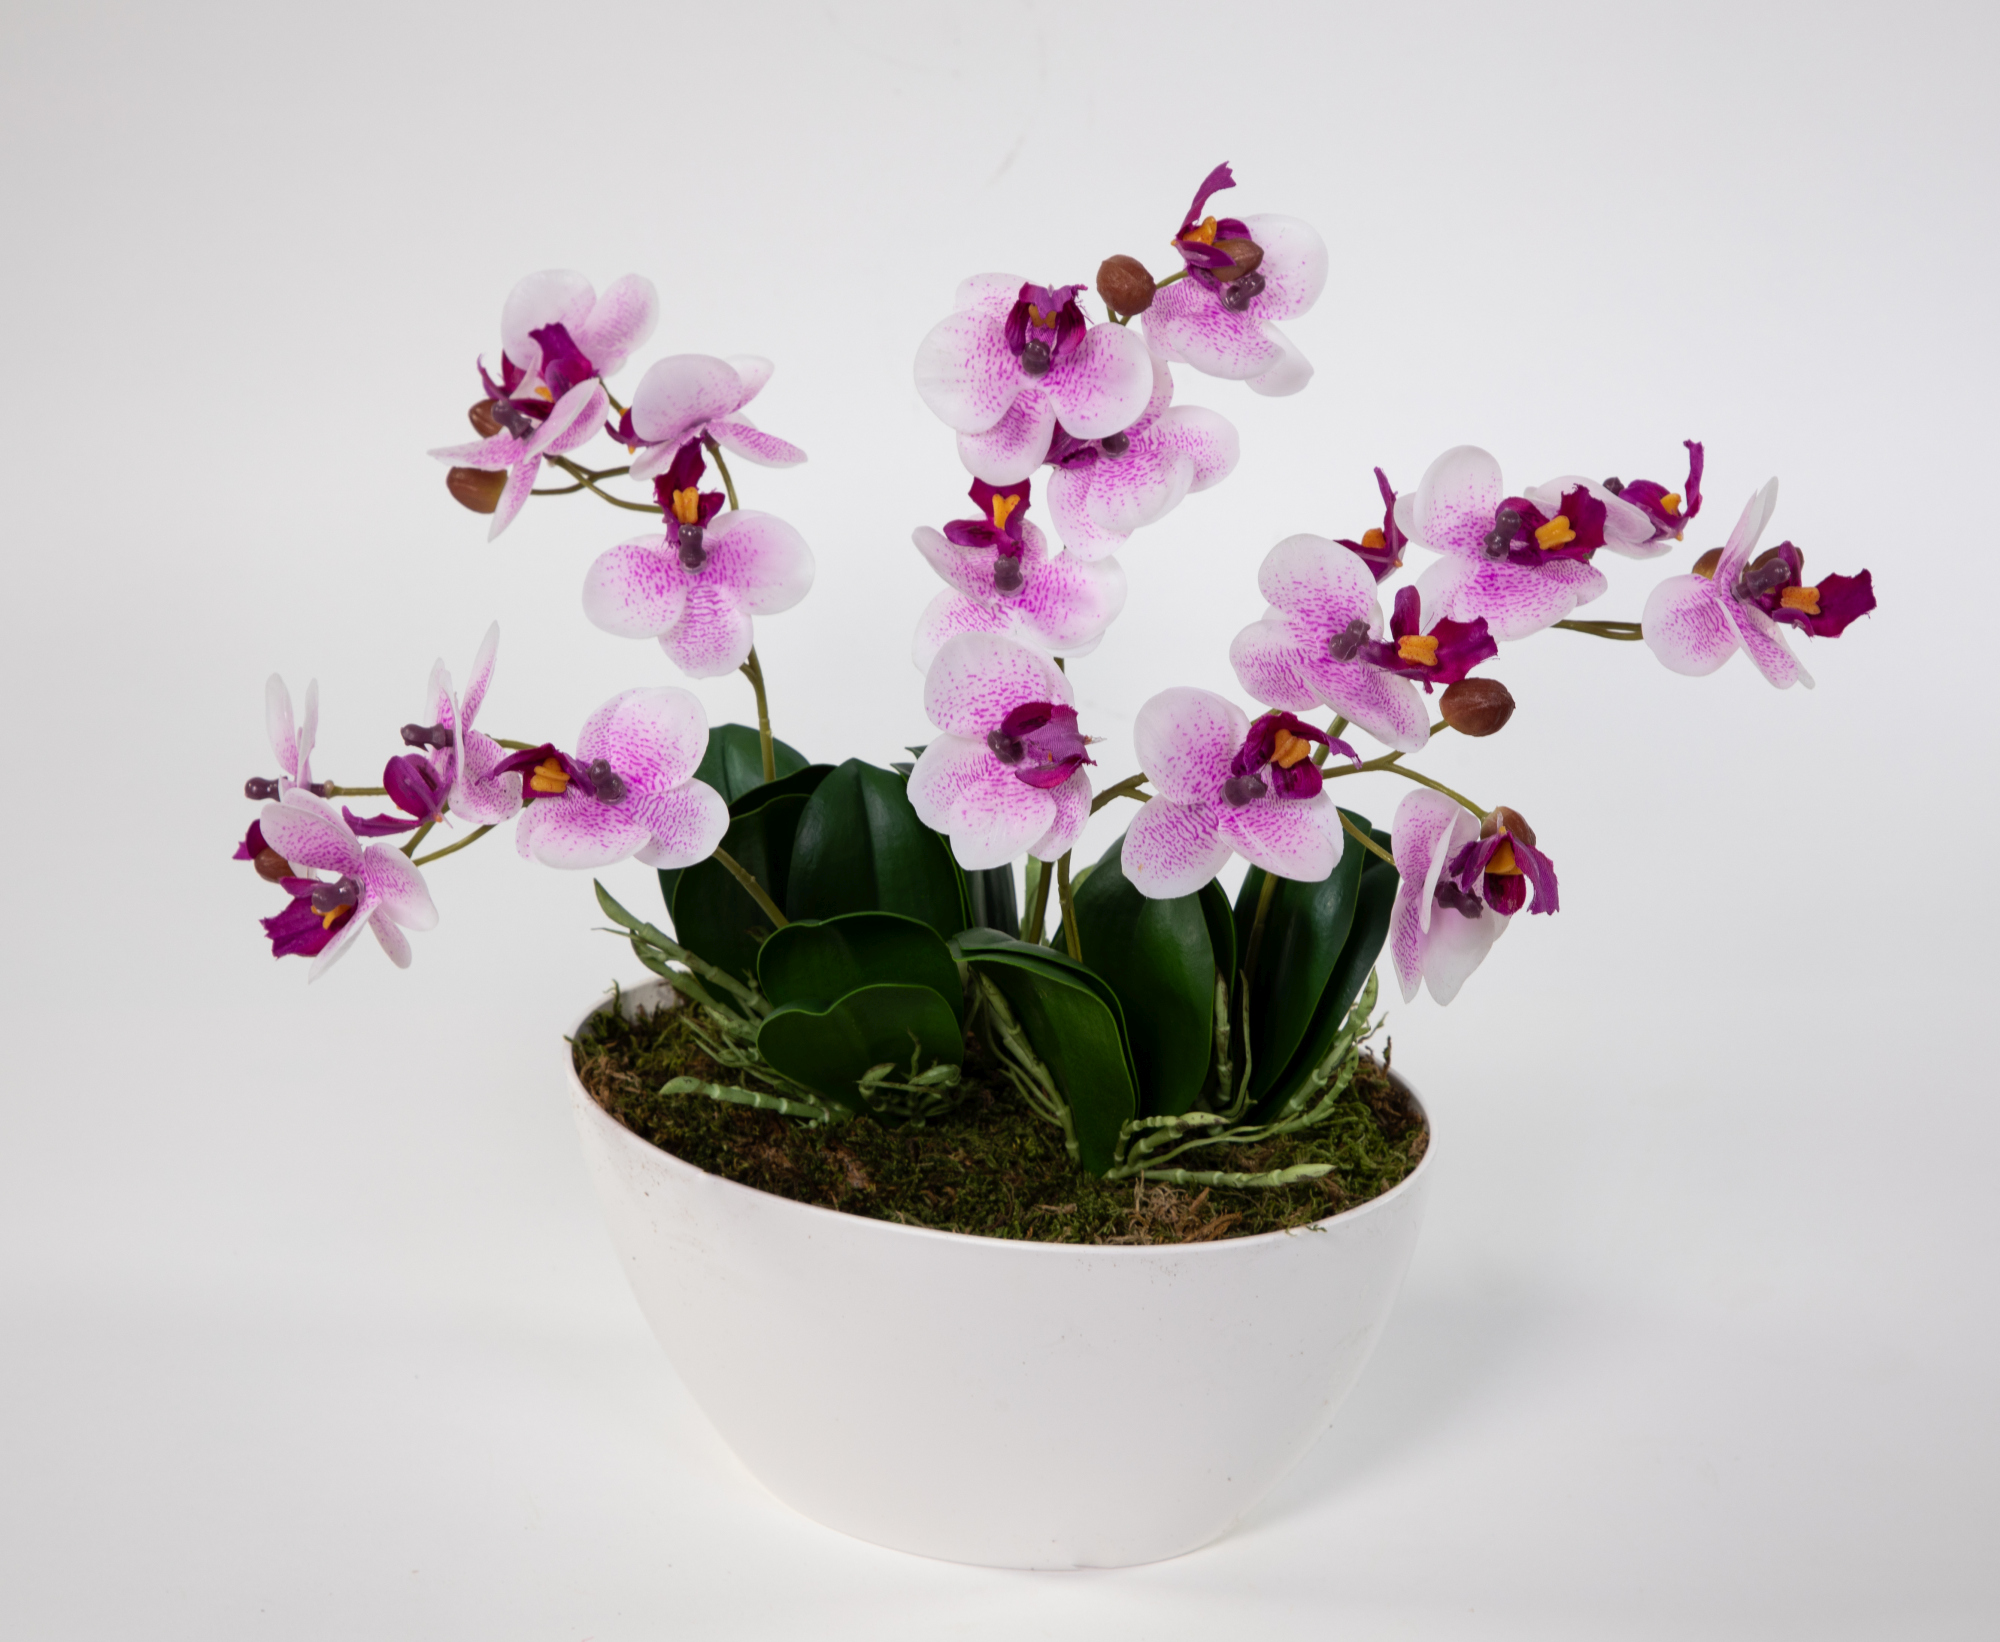 Orchideen-Arrangement Real Touch 36x34cm pink-weiß in weißer Dekoschale DP künstliche Orchidee Blume